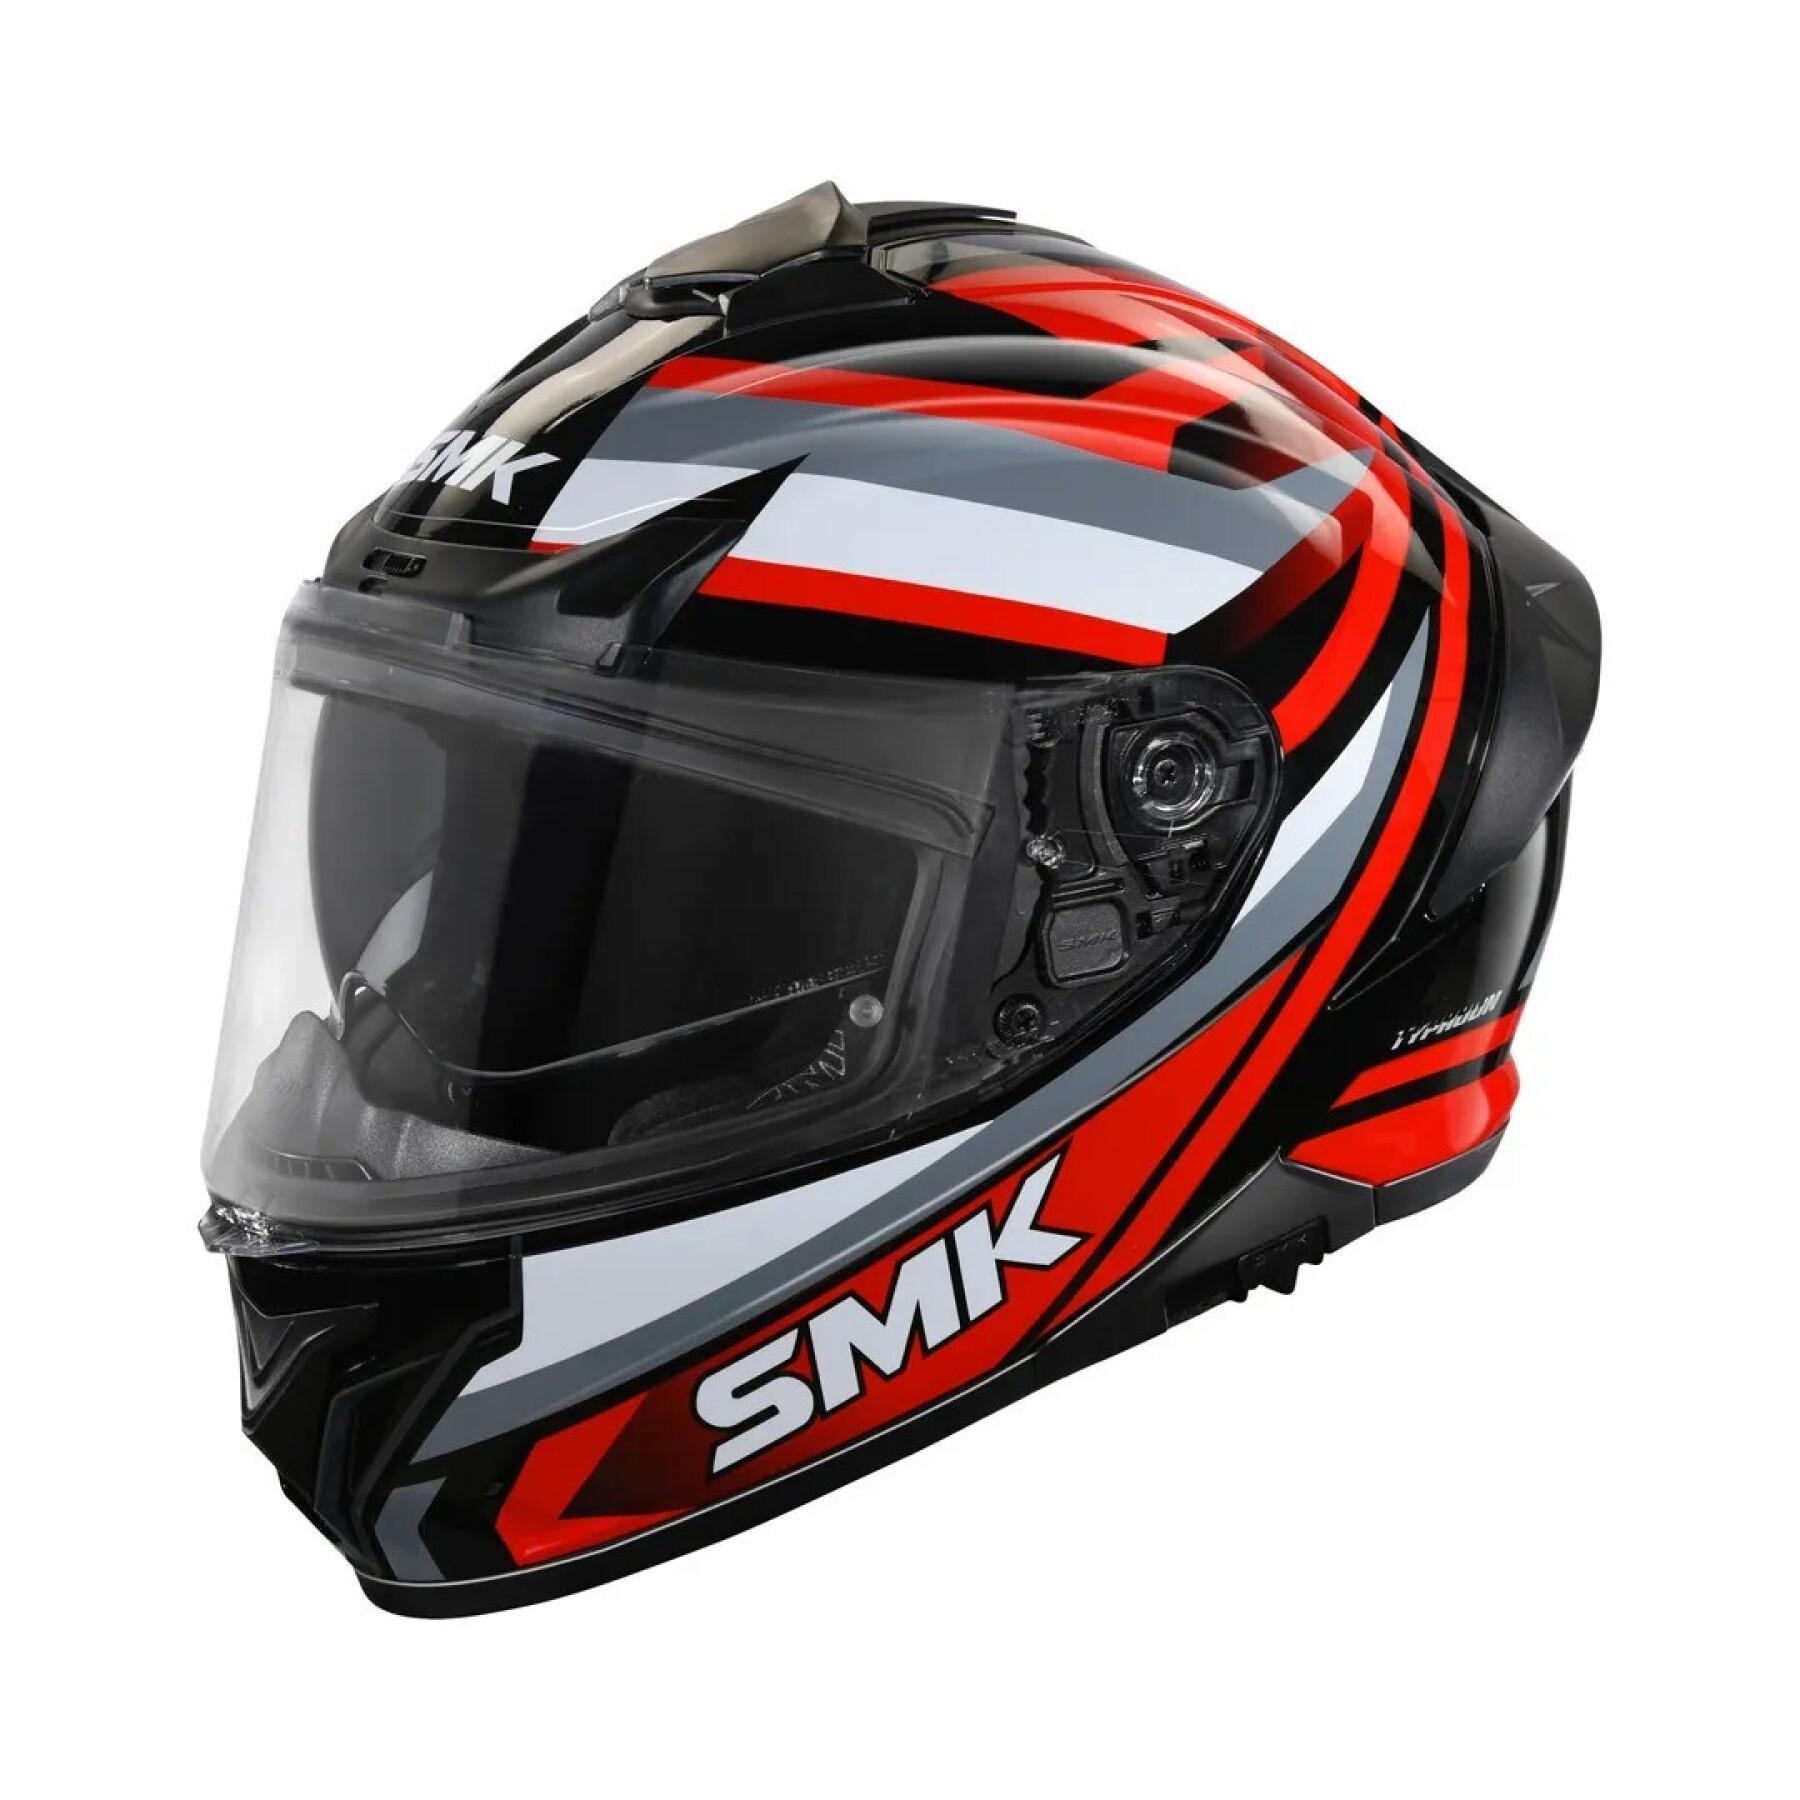 Full face motorcycle helmet SMK Typhoon Freeride